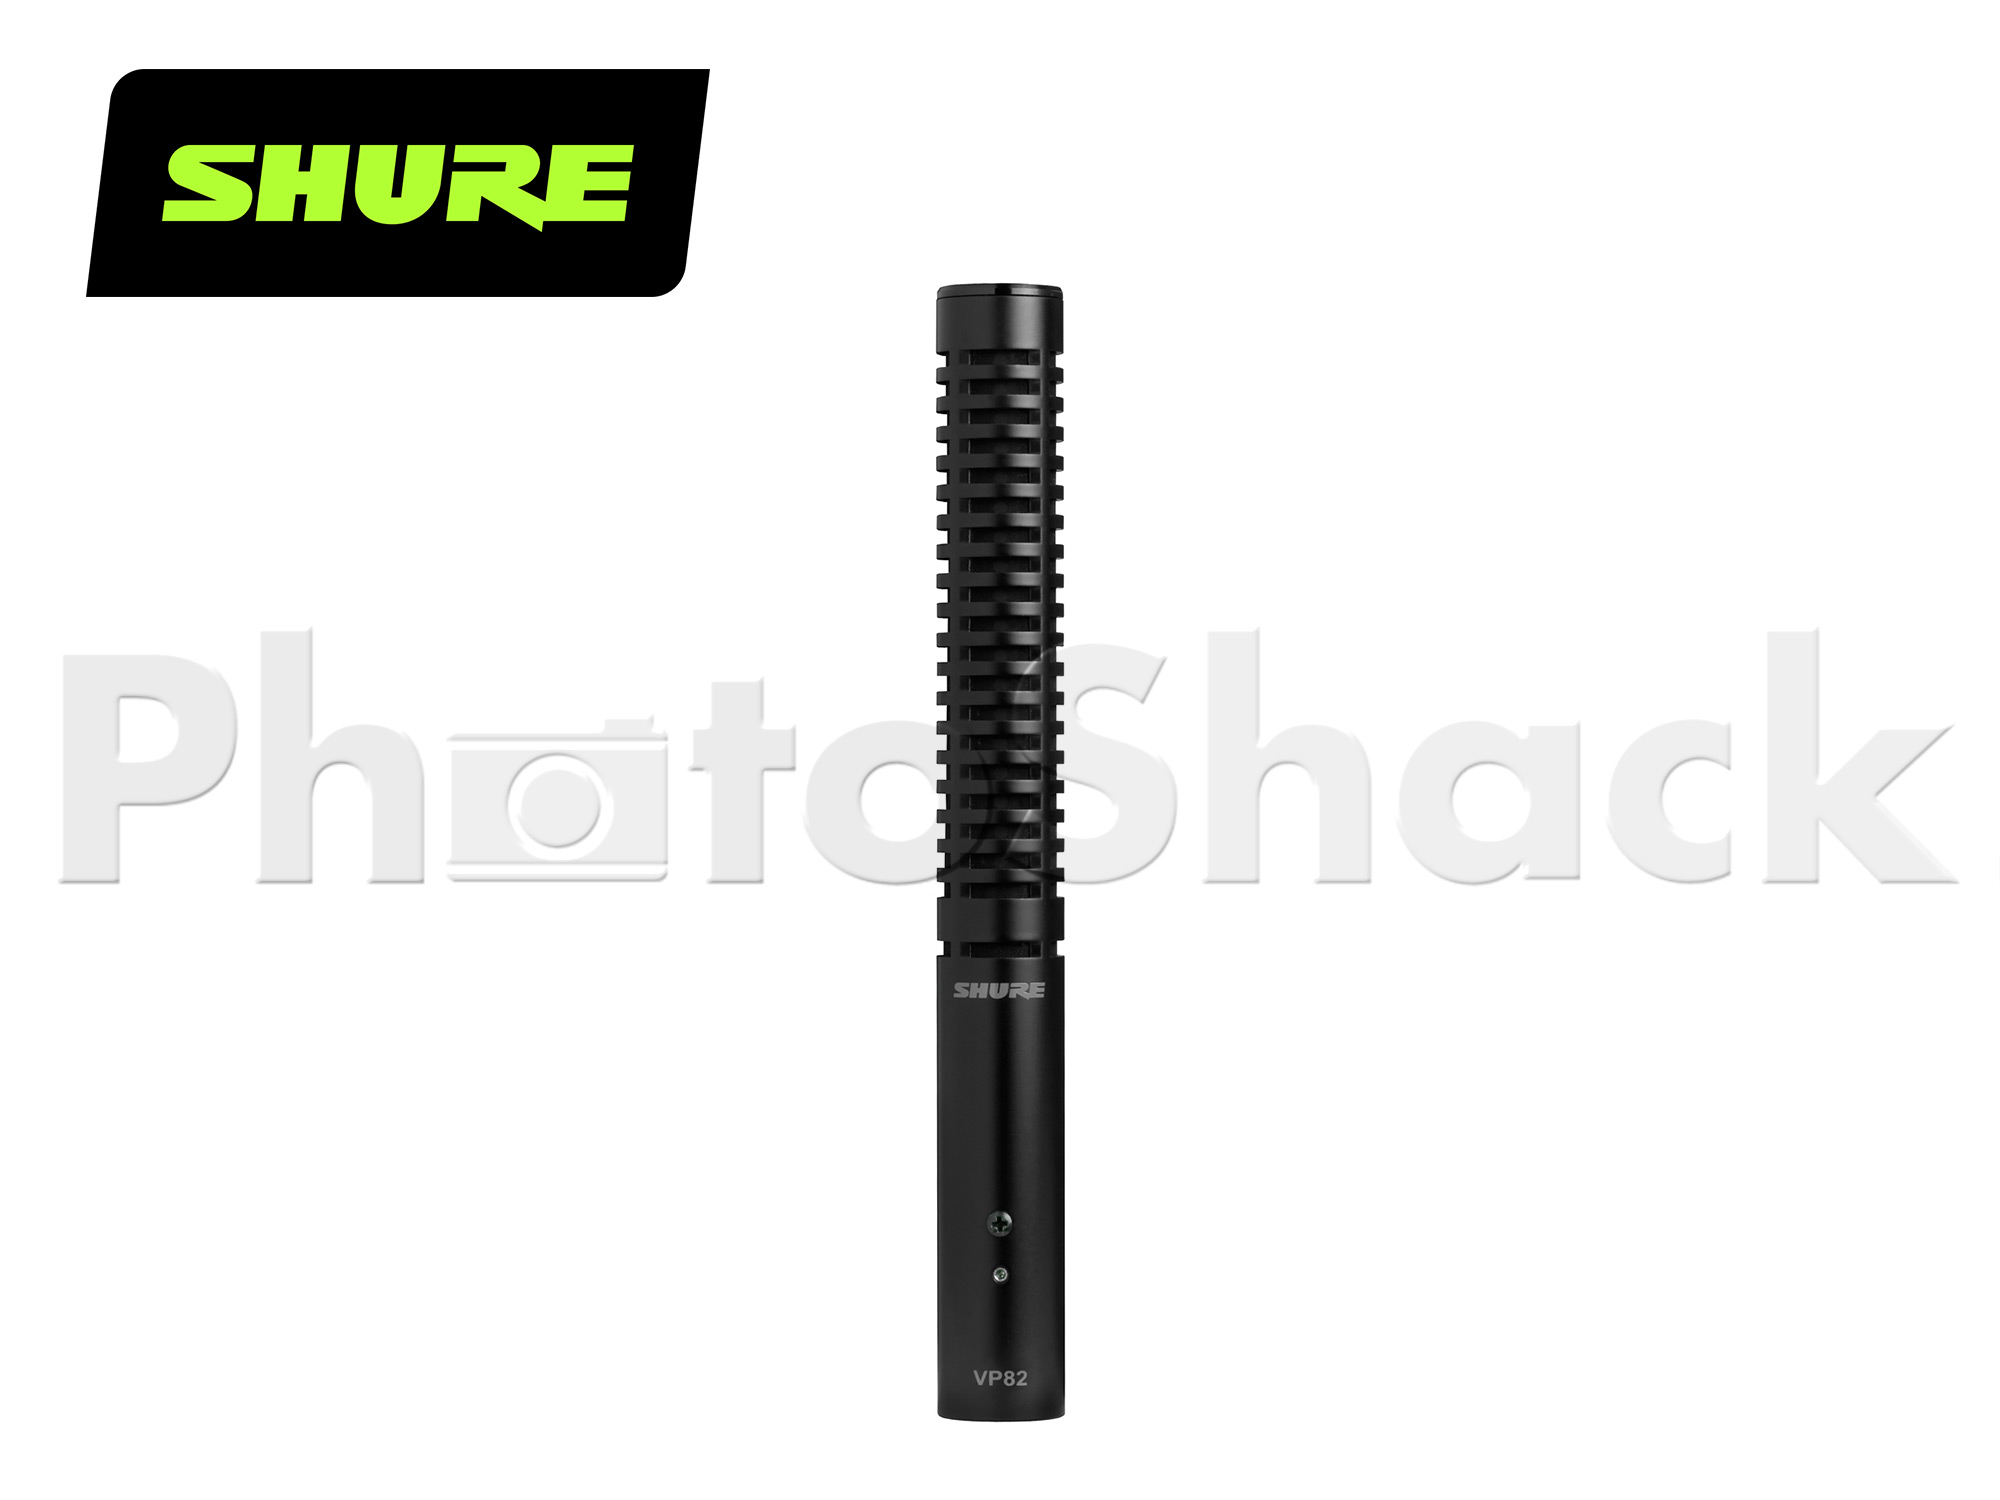 Shure VP82 End-Address Shotgun Condenser Microphone